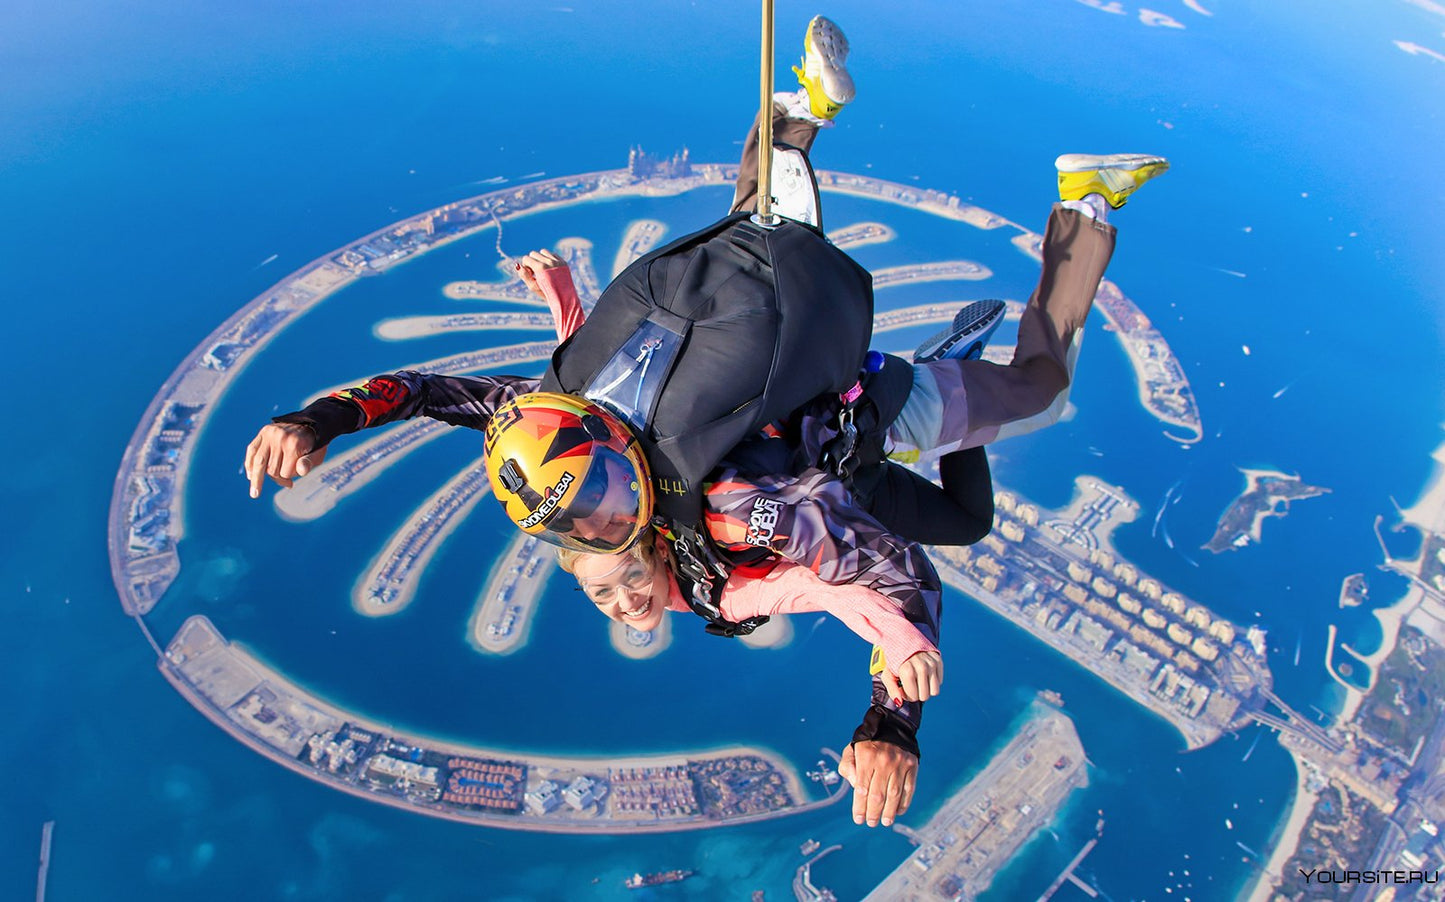 Dubai Tandem Skydiving - Tripventura